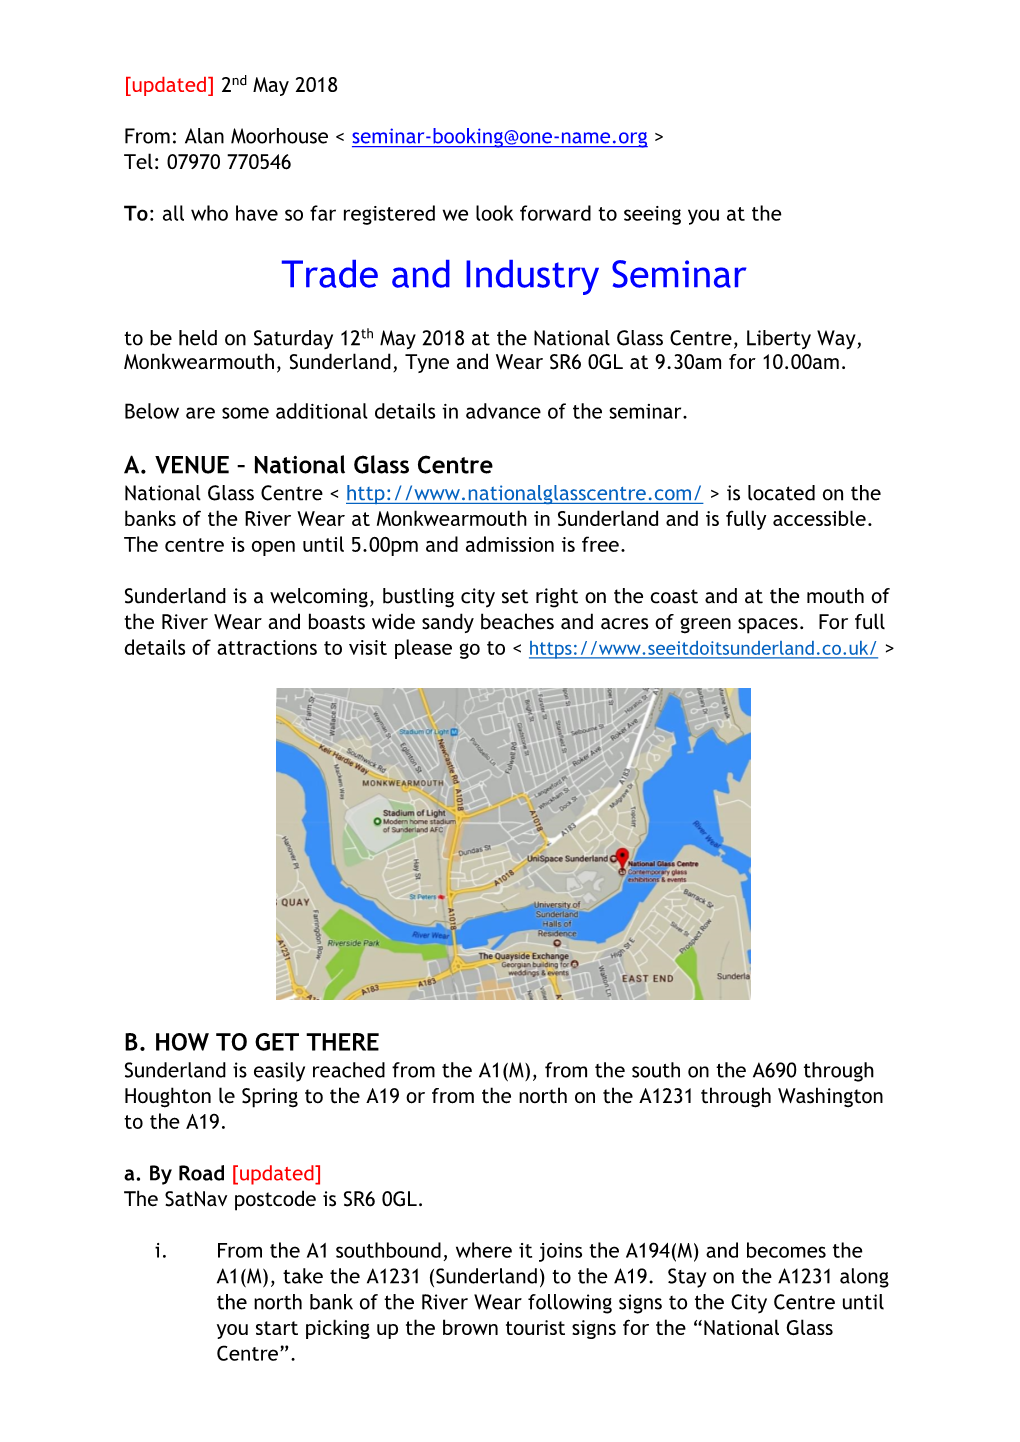 Trade and Industry Seminar